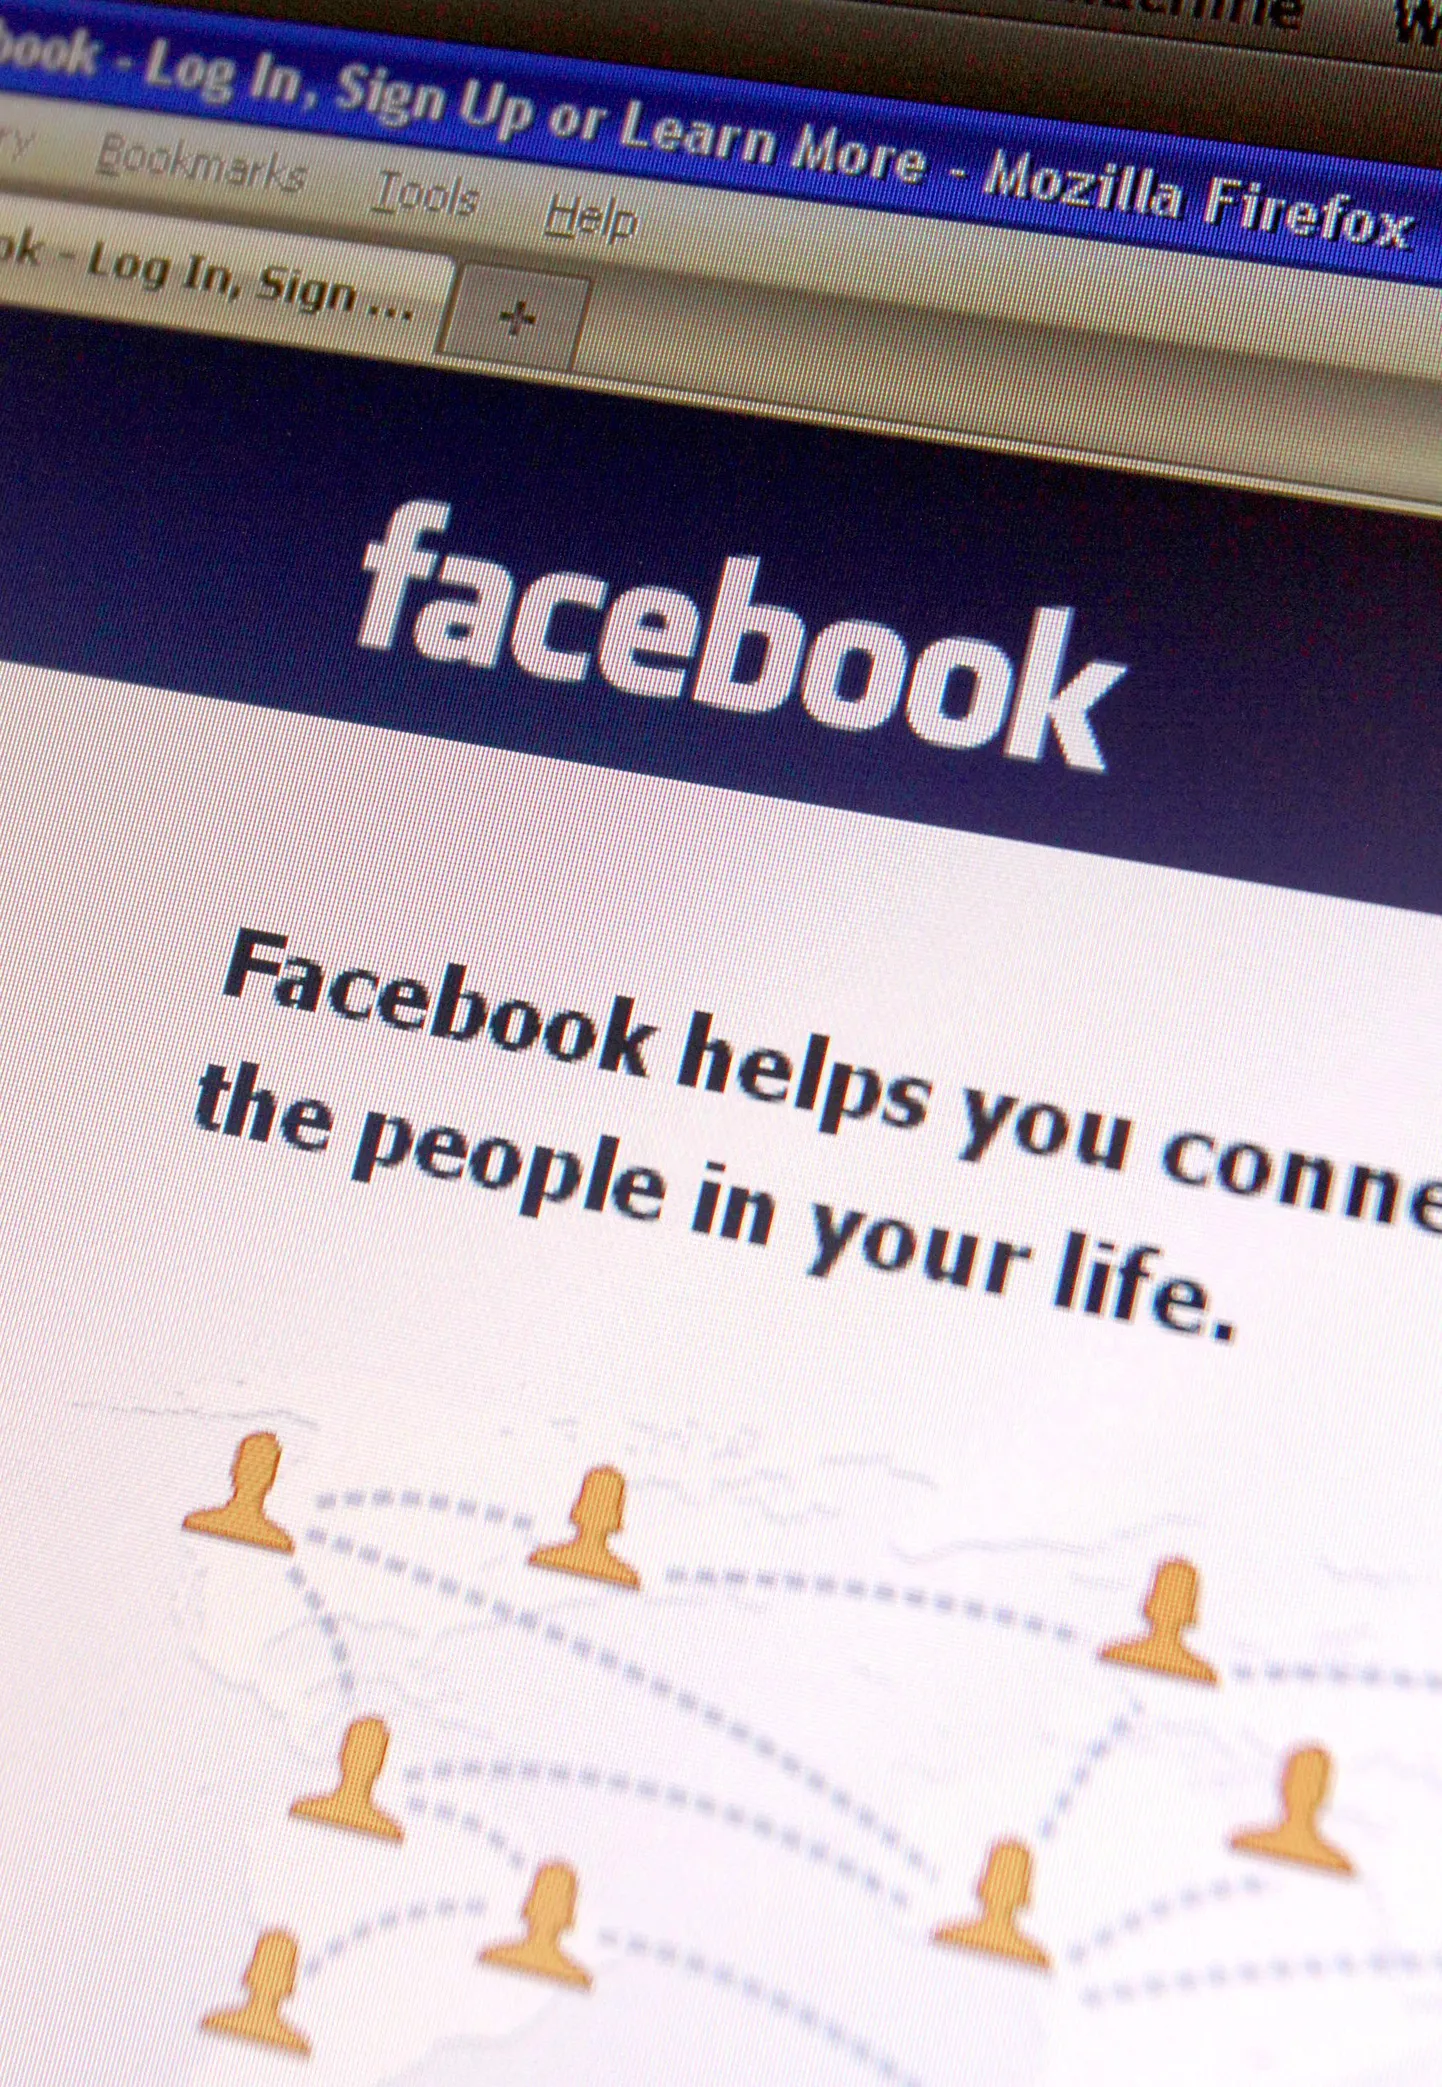 Ravimireklaam kolib sotsiaalmeediasse ja ravimiametil tuleb silma peal hoida ka Facebookil jms kanalitel.